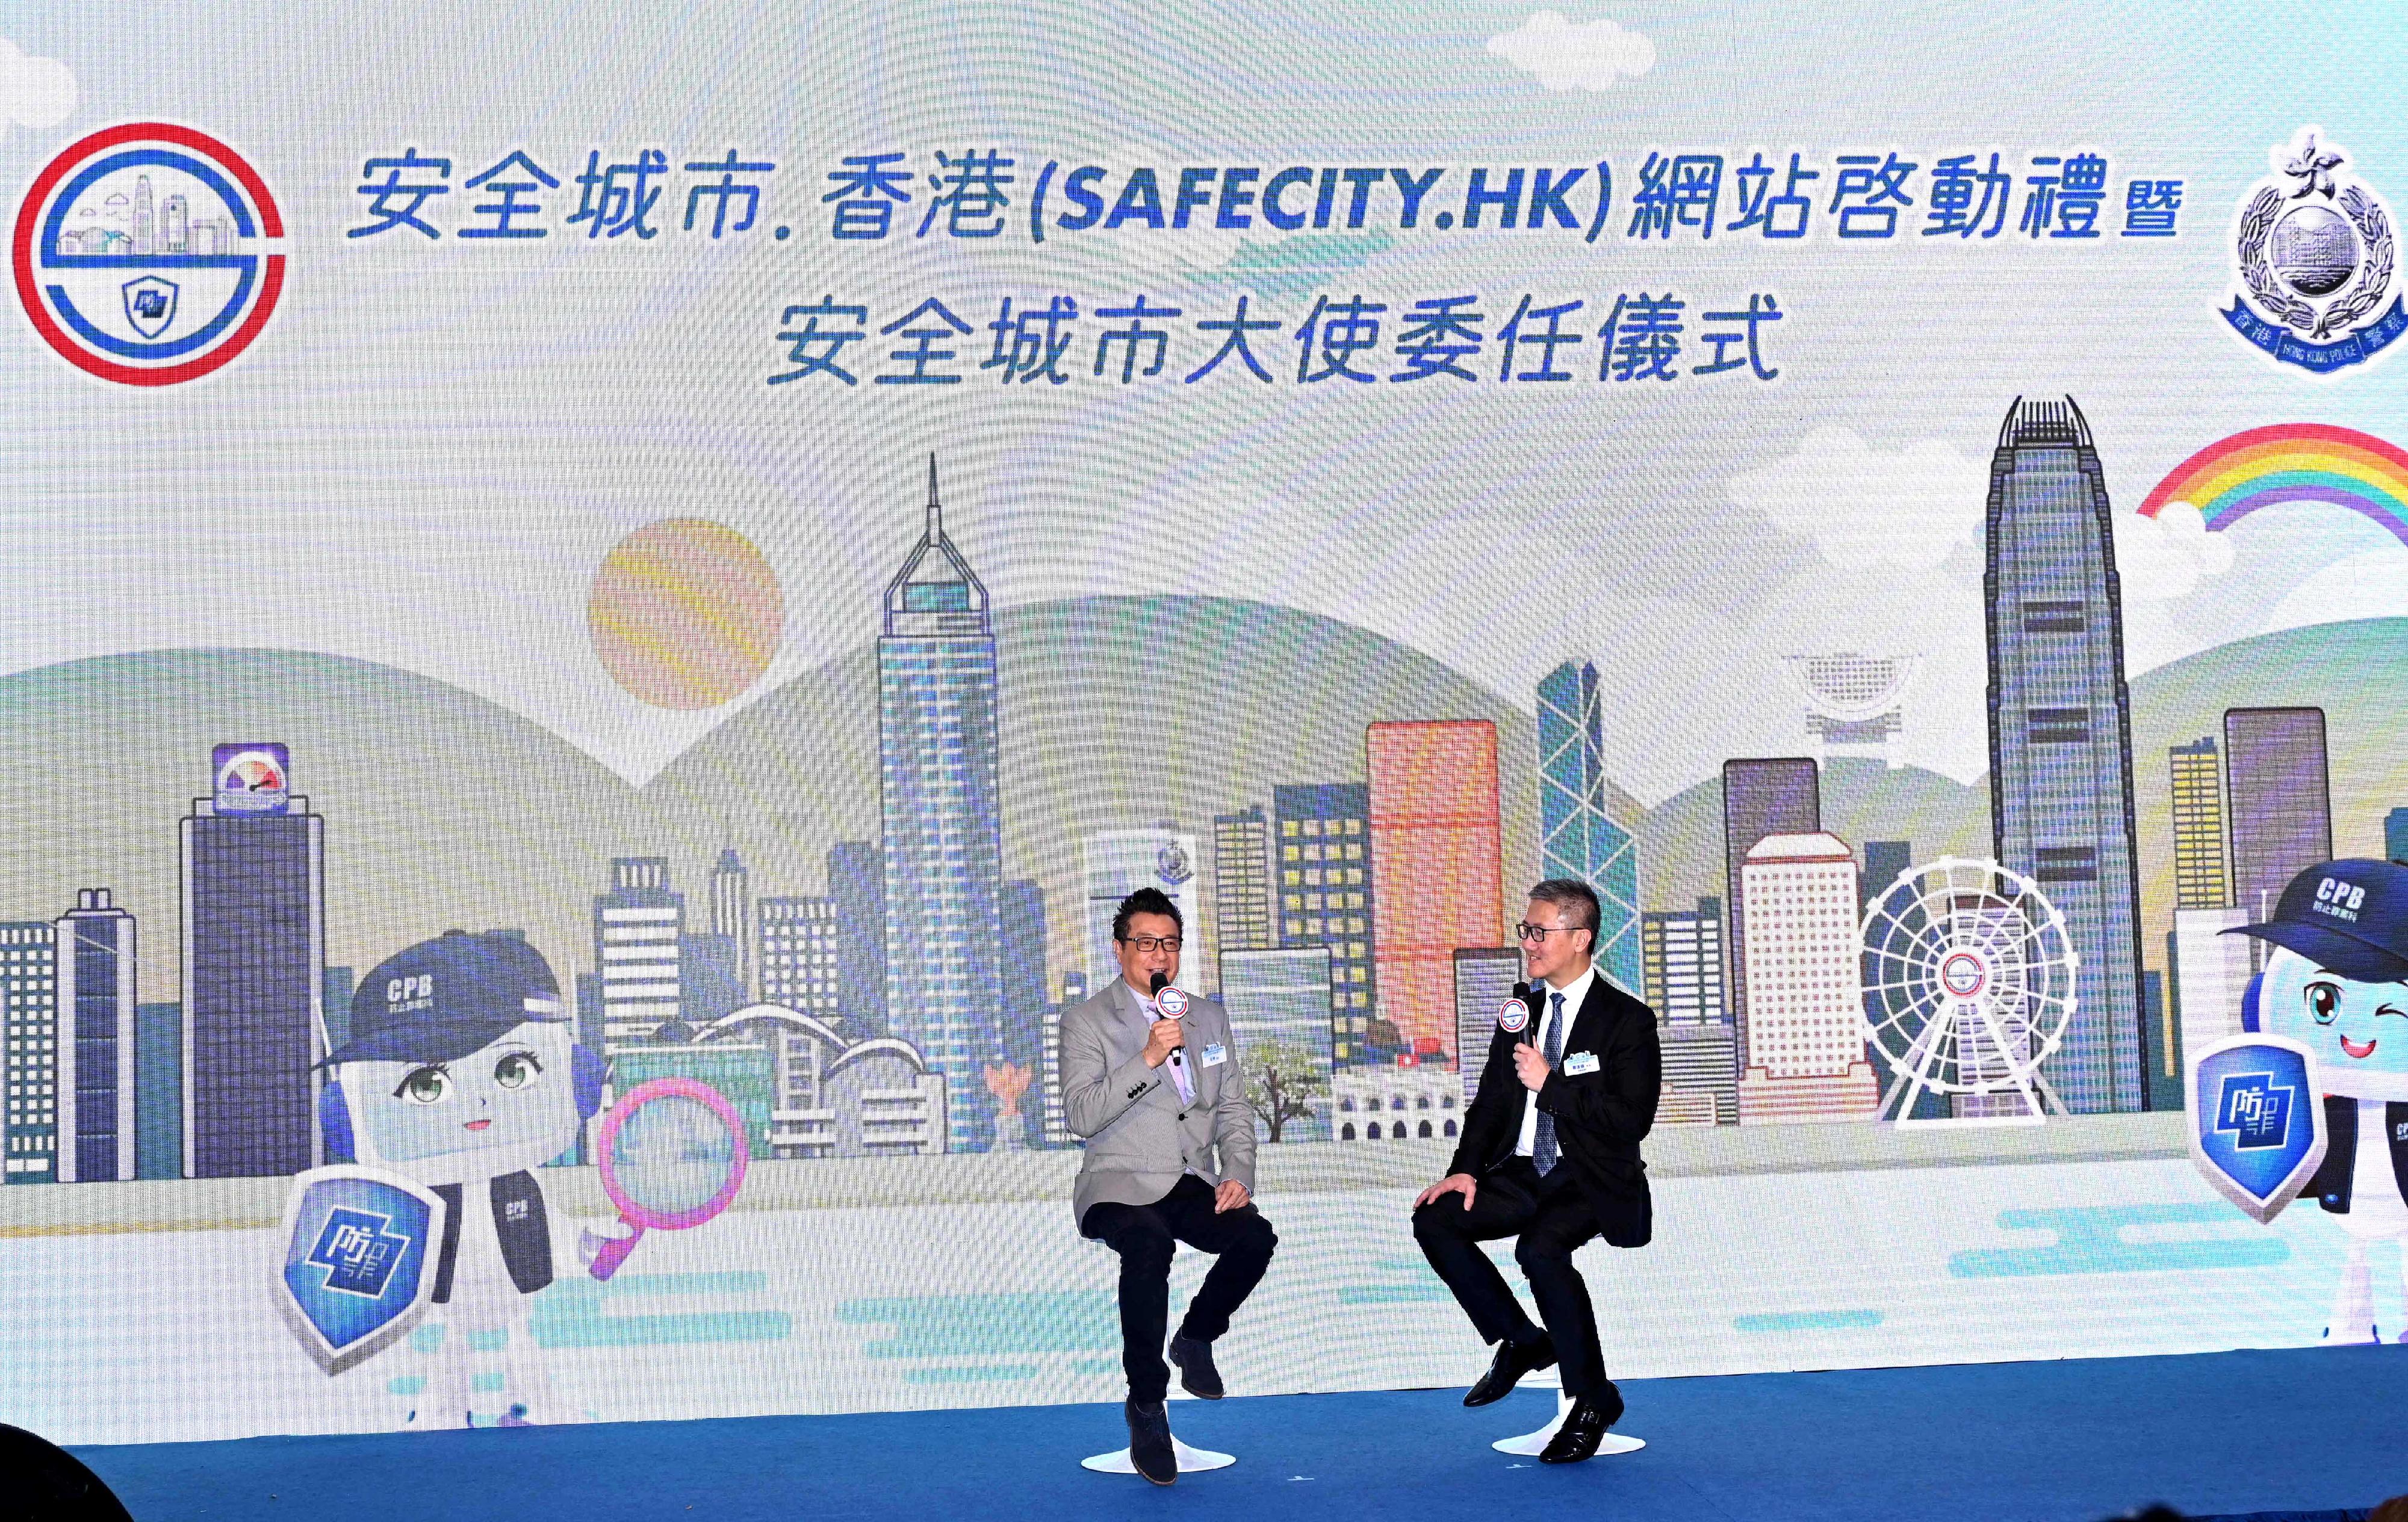 警务处今日（五月十六日）推出全新防罪网站「安全城市.香港」（SafeCity.HK）及委任47名「安全城市大使」。图示警务处处长萧泽颐（右）与嘉宾石修对谈，分享防罪锦囊。